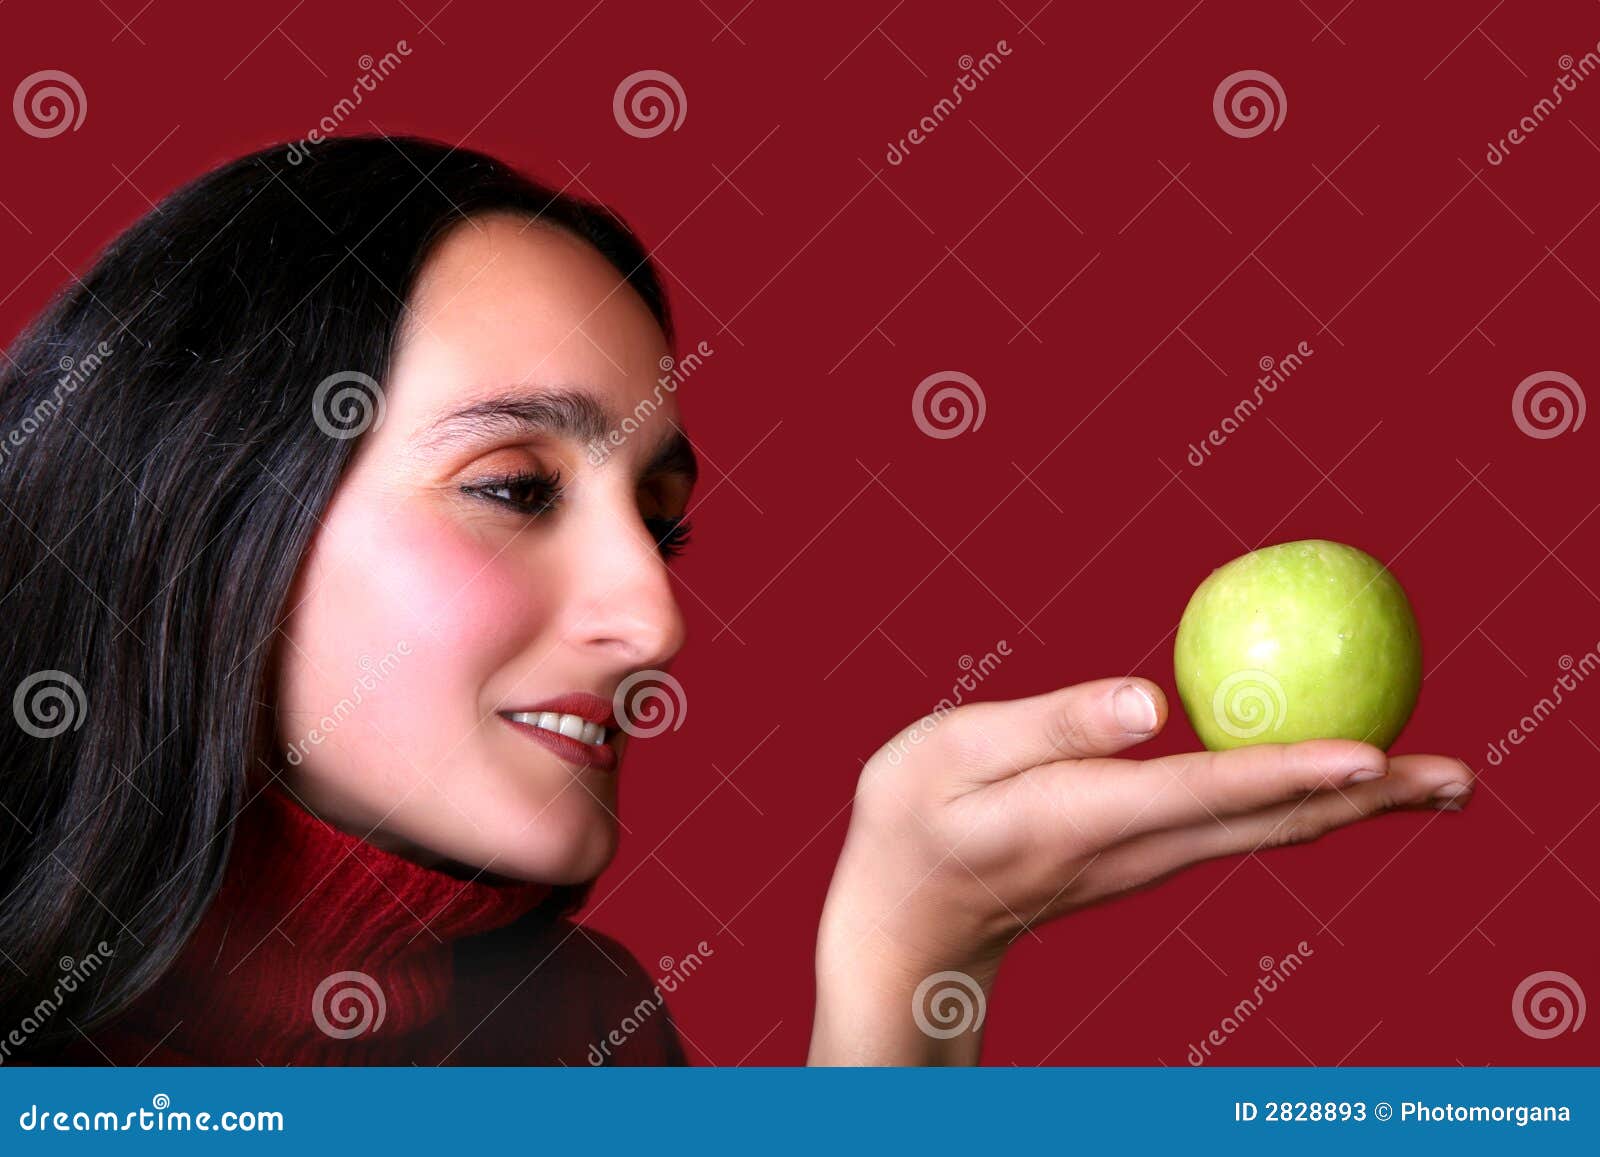 Versuchung. Digital-Foto einer Frau, die einen Apfel betrachtet.